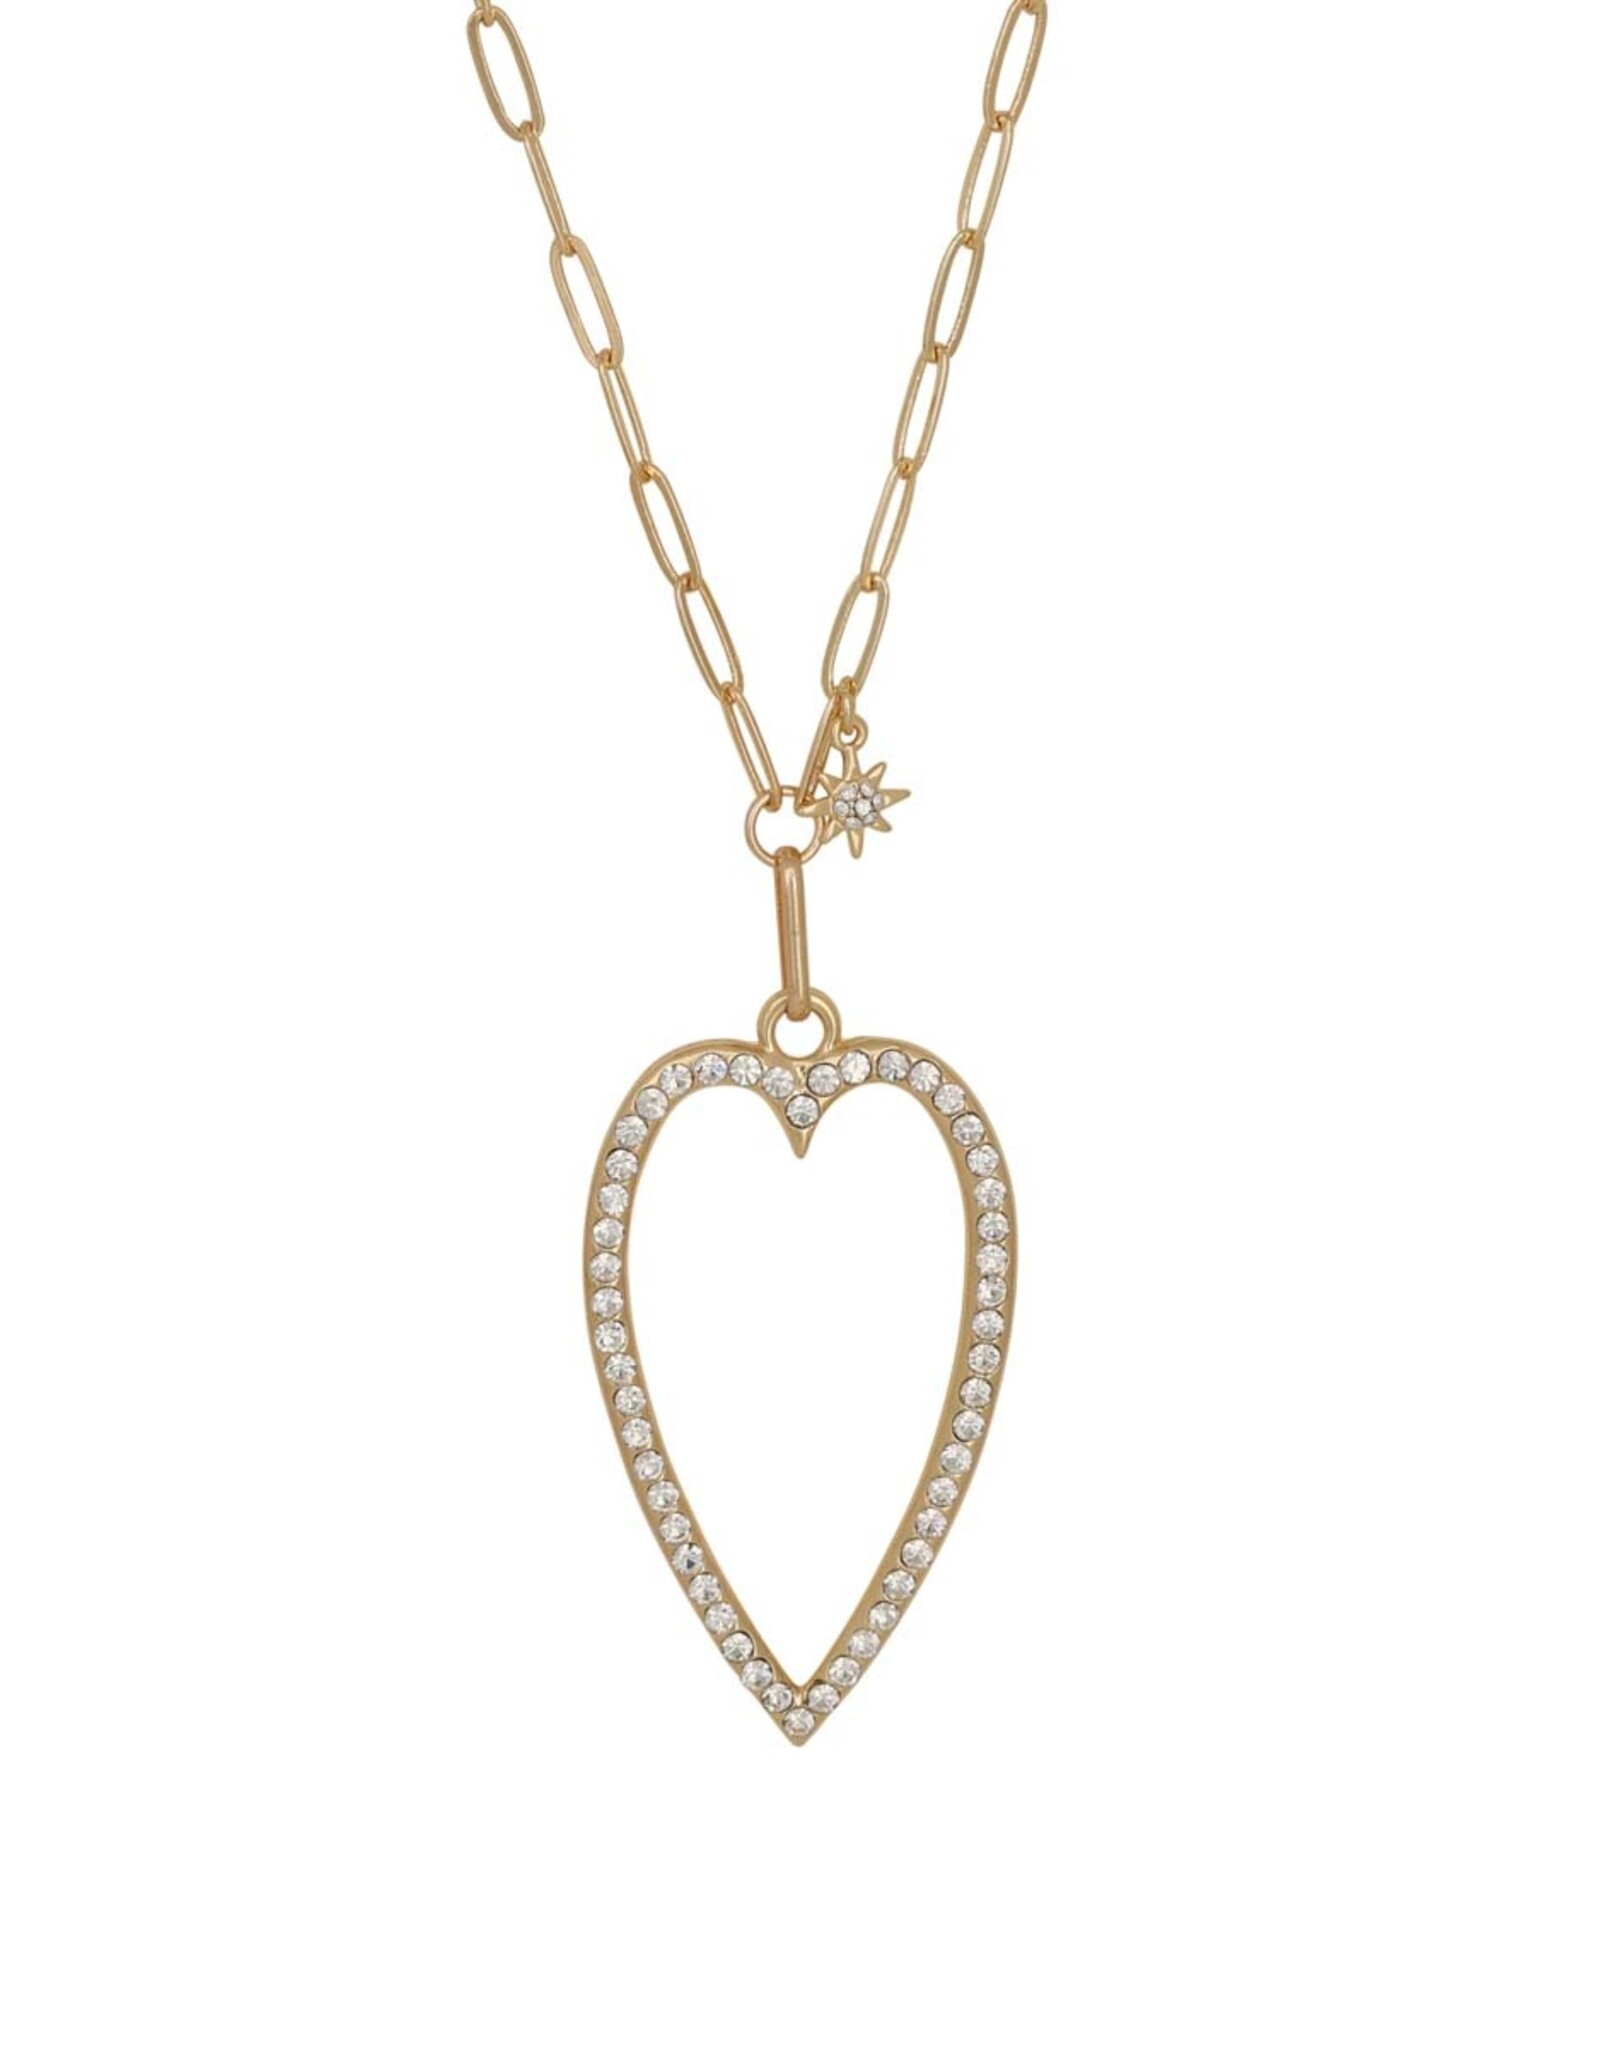 Merx Inc. Merx Fashion Necklace Shiny Gold+ Crystal 80+7cm